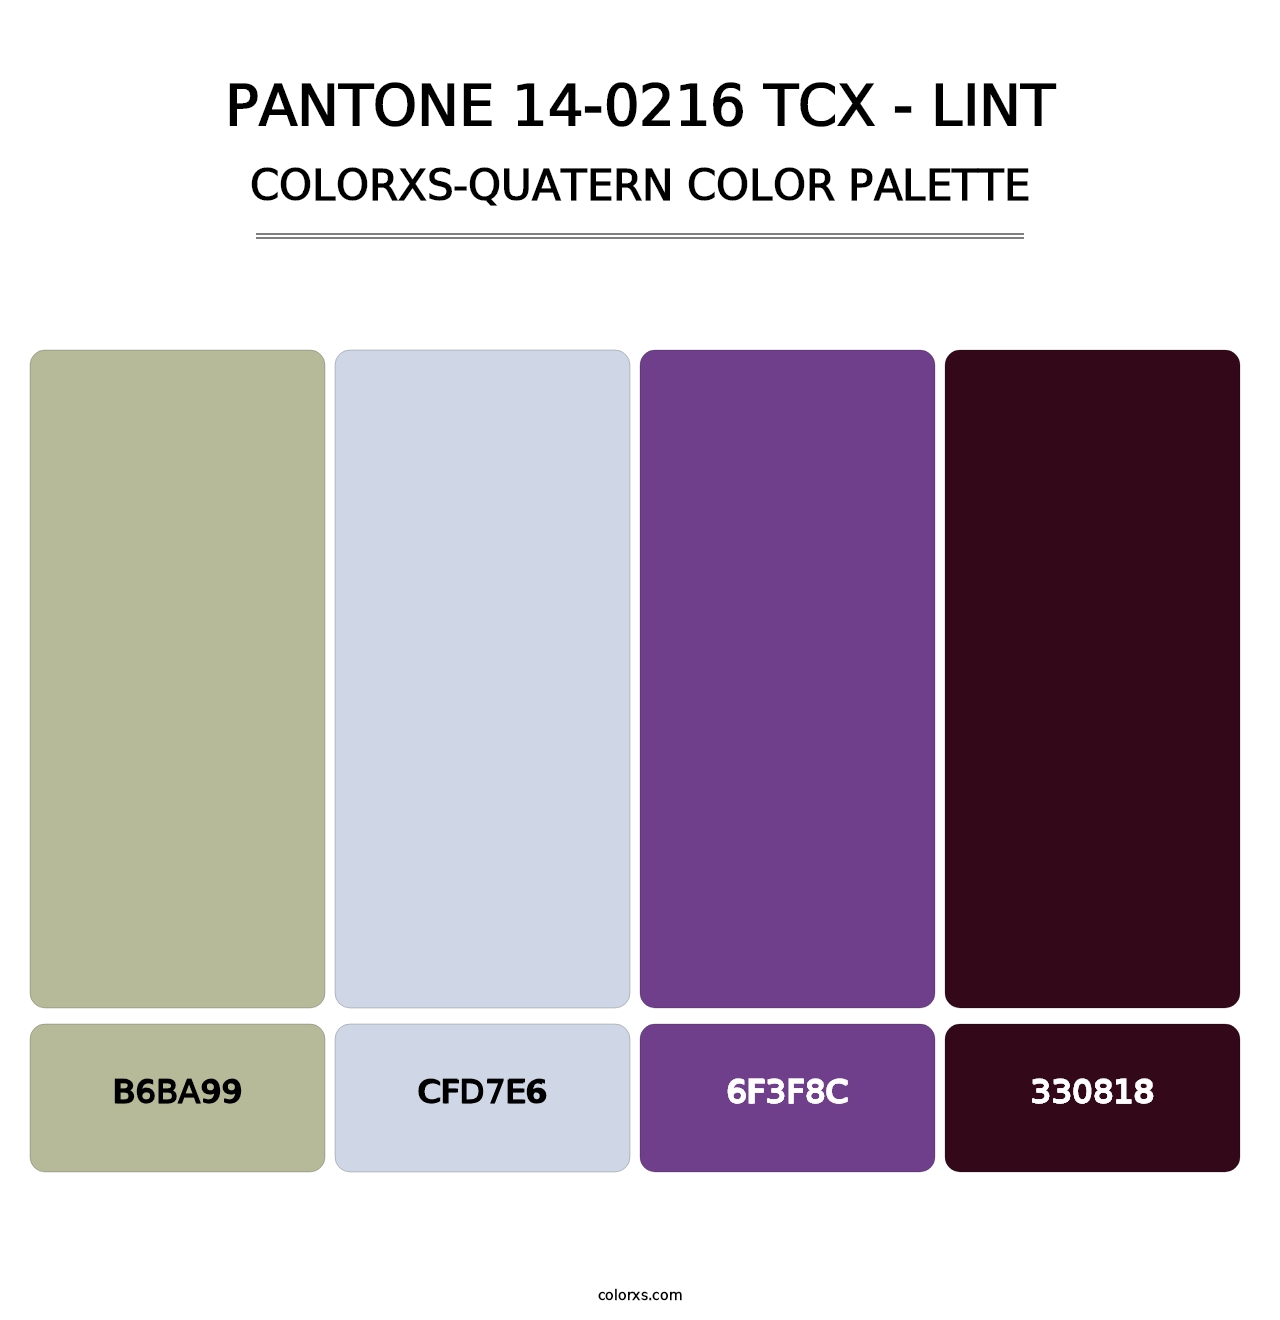 PANTONE 14-0216 TCX - Lint - Colorxs Quatern Palette